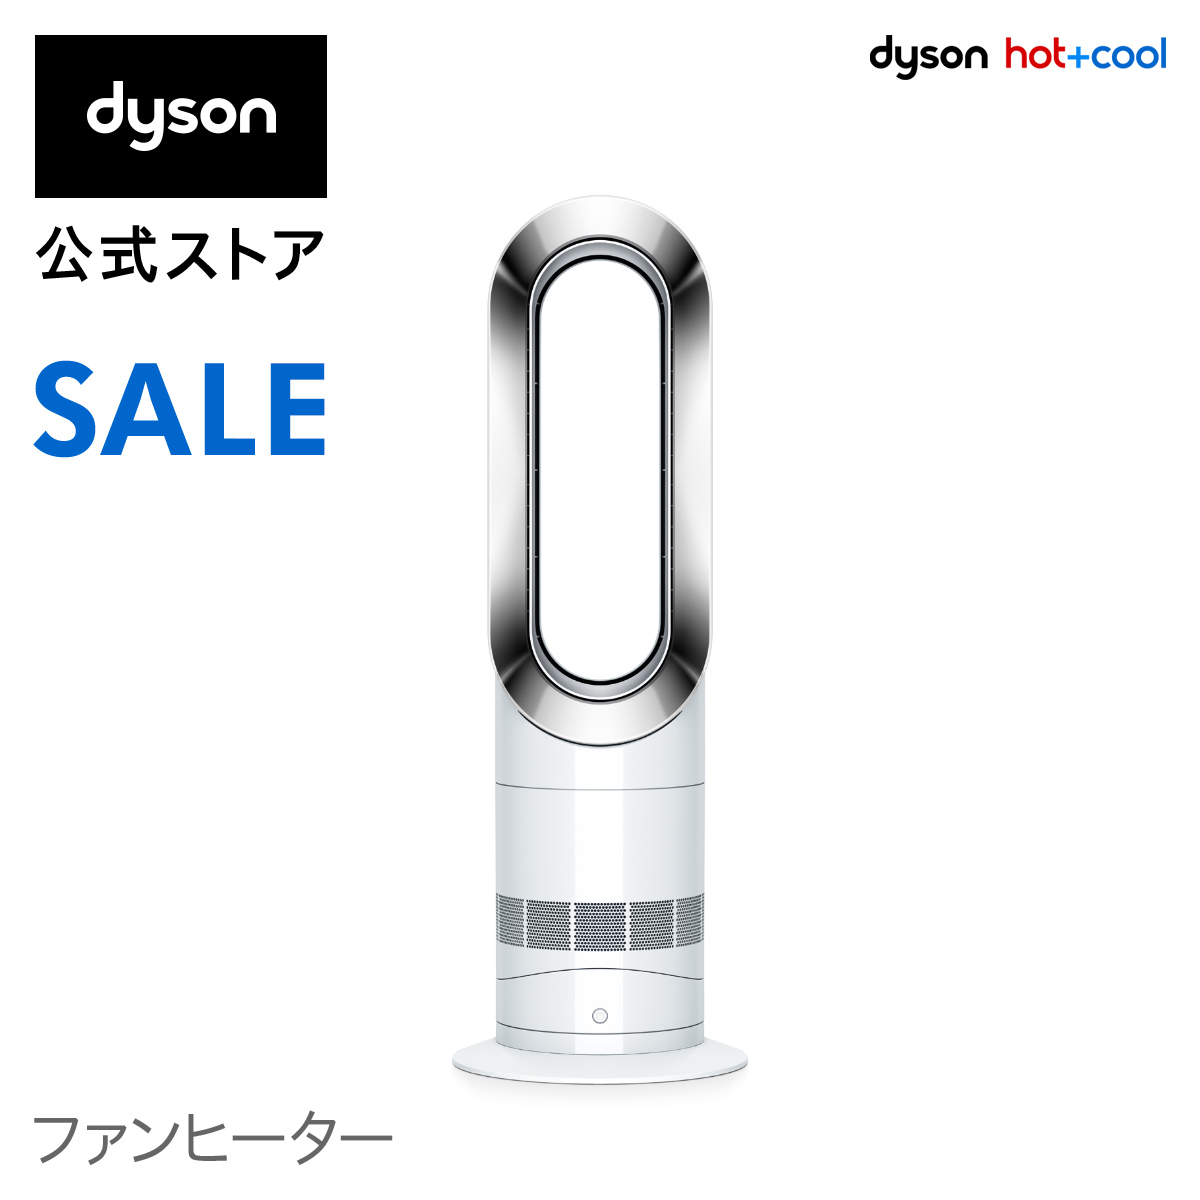 【破格値下げ】 Dyson ダイソン ホットアンドクール dyson ヒーター 暖房 AM09 WN AM09WN ホワイト Hot+Cool ファンヒーター ビッグ割引 期間限定 16日9:59amまで ニッケル